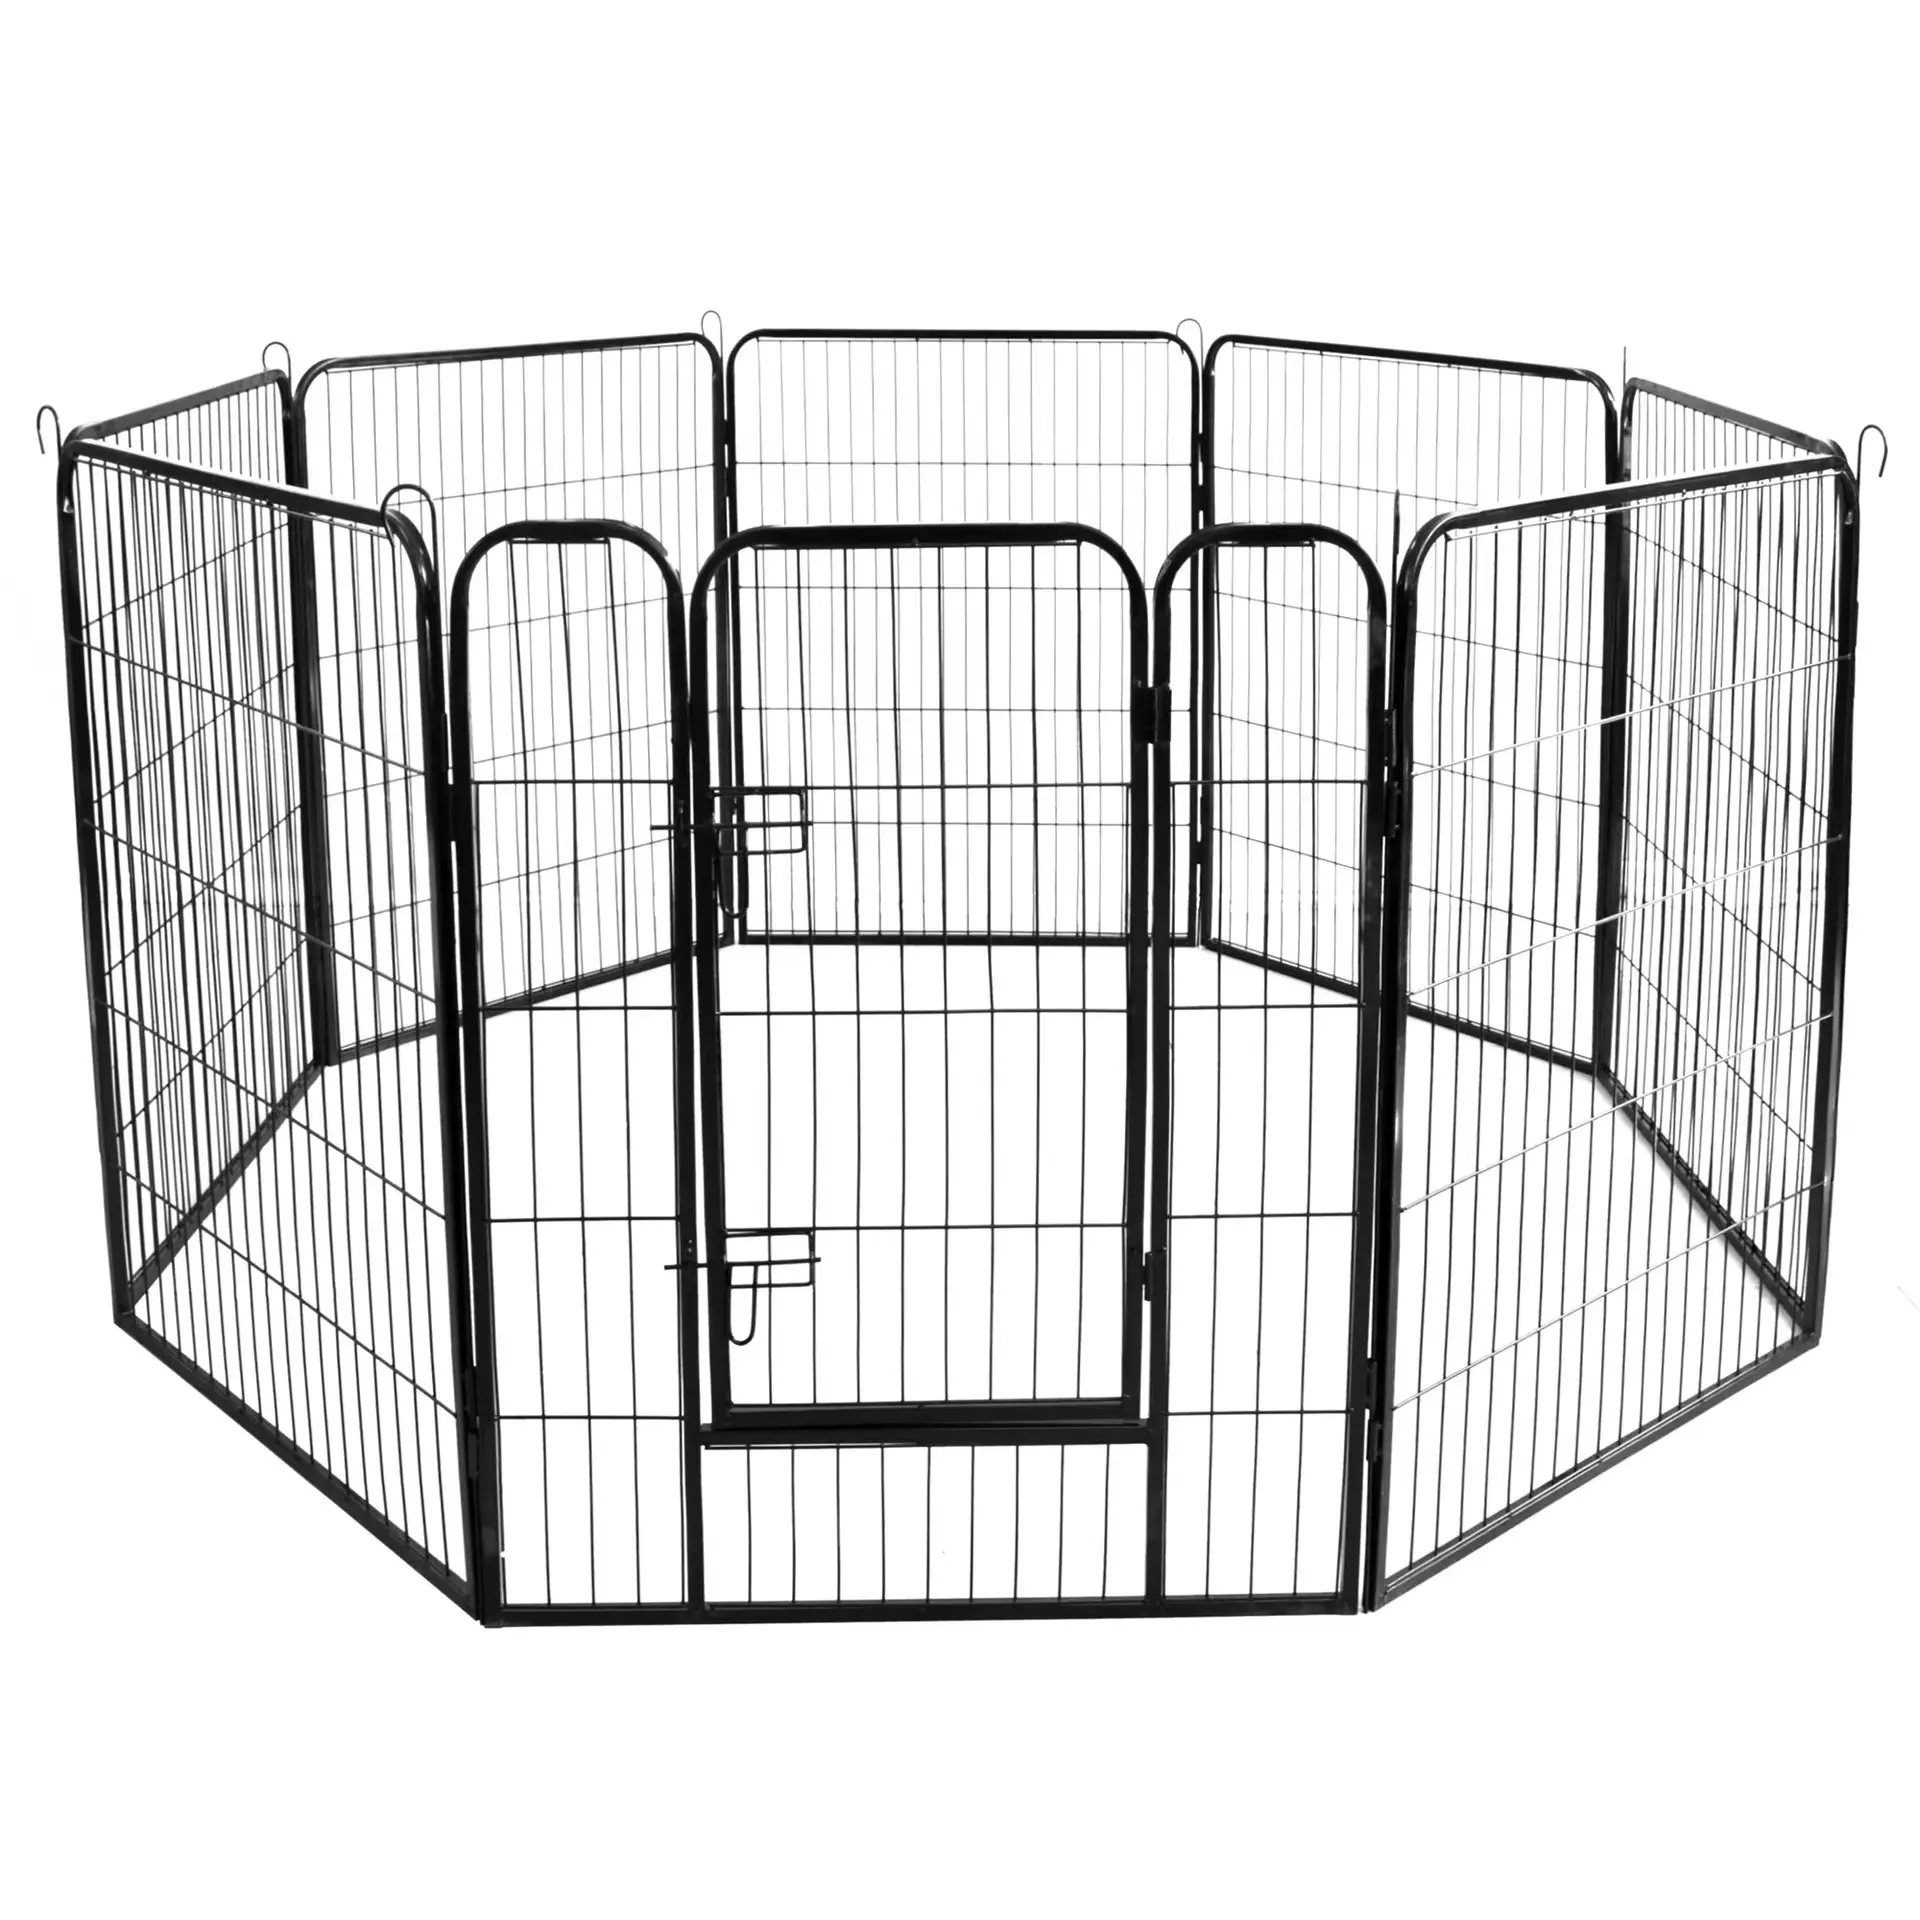 Clôture de jardin décorative personnalisée CS pas de fouille clôture panneau de fil métallique antirouille bordure barrière animale pour chien